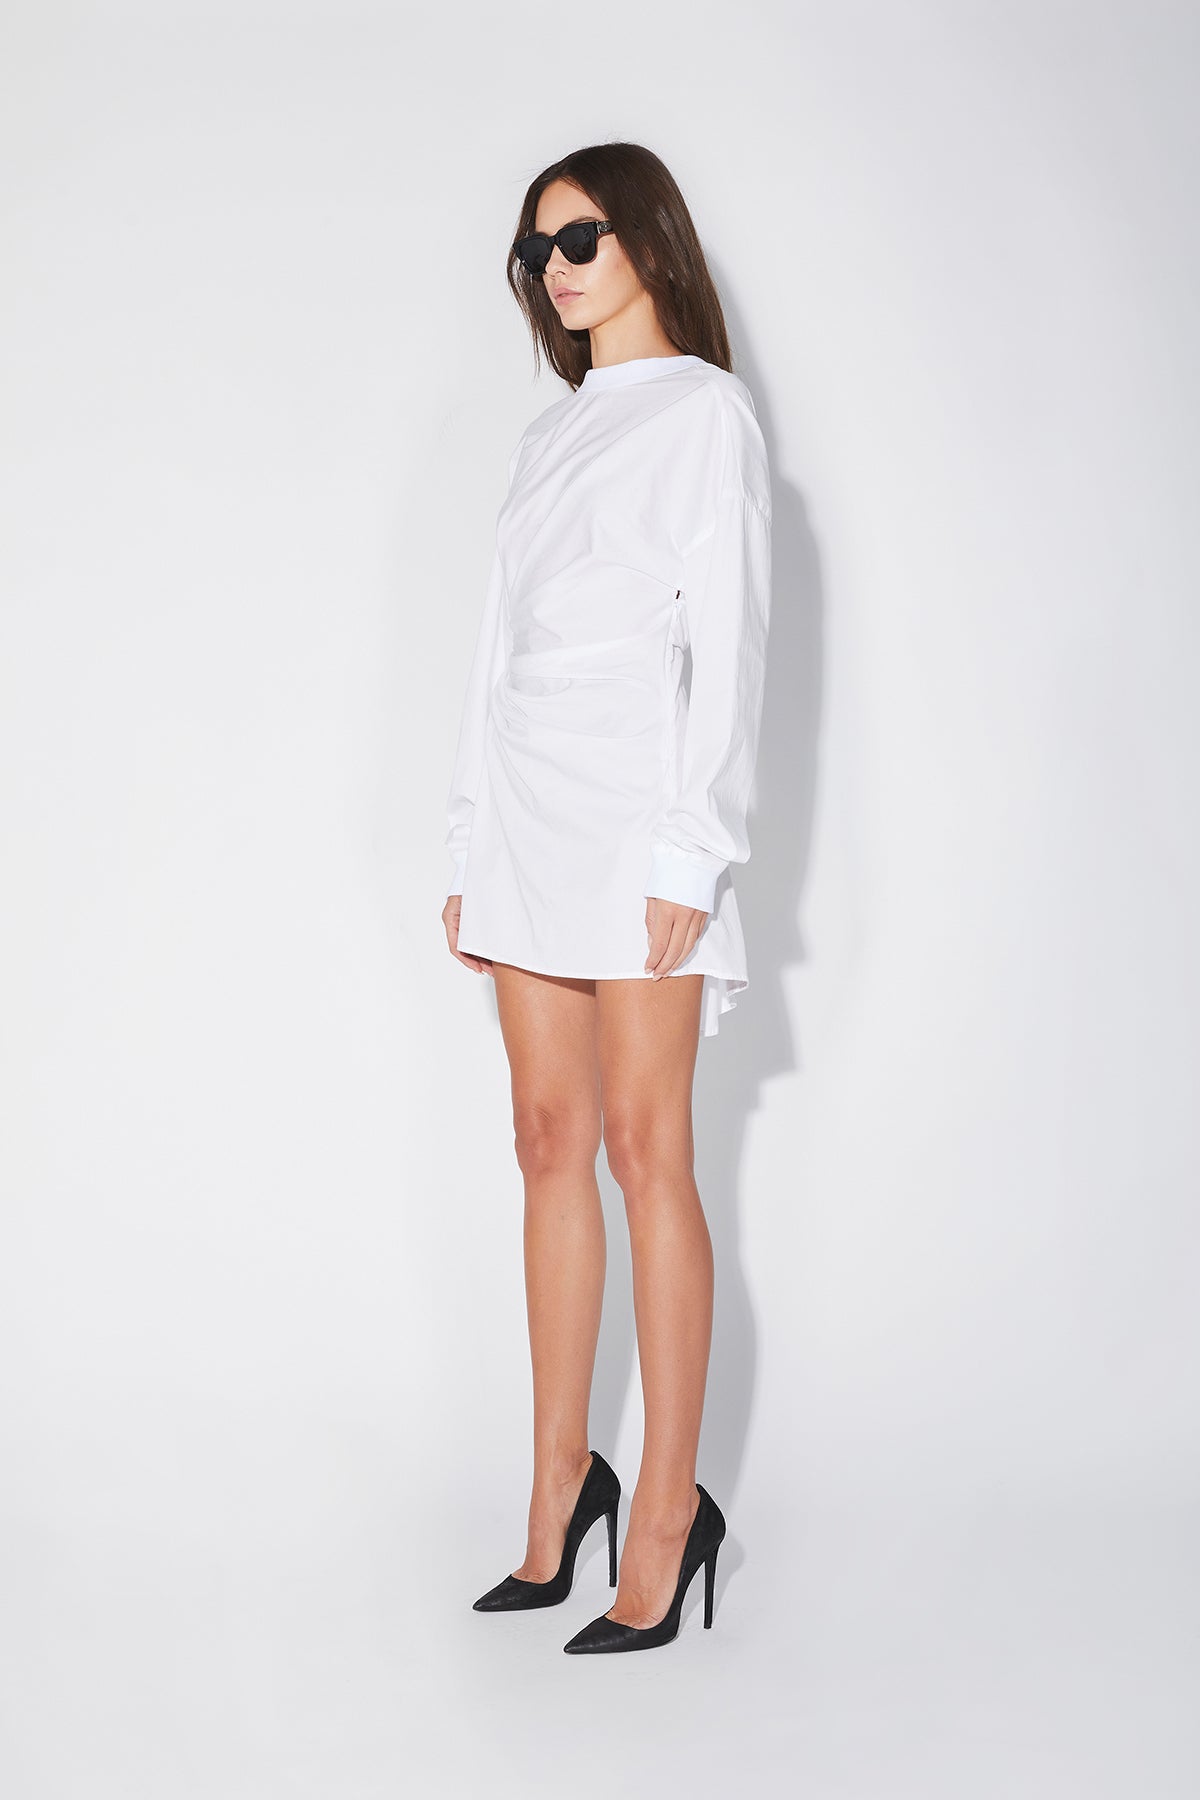 SHAUNA DRESS | WHITE